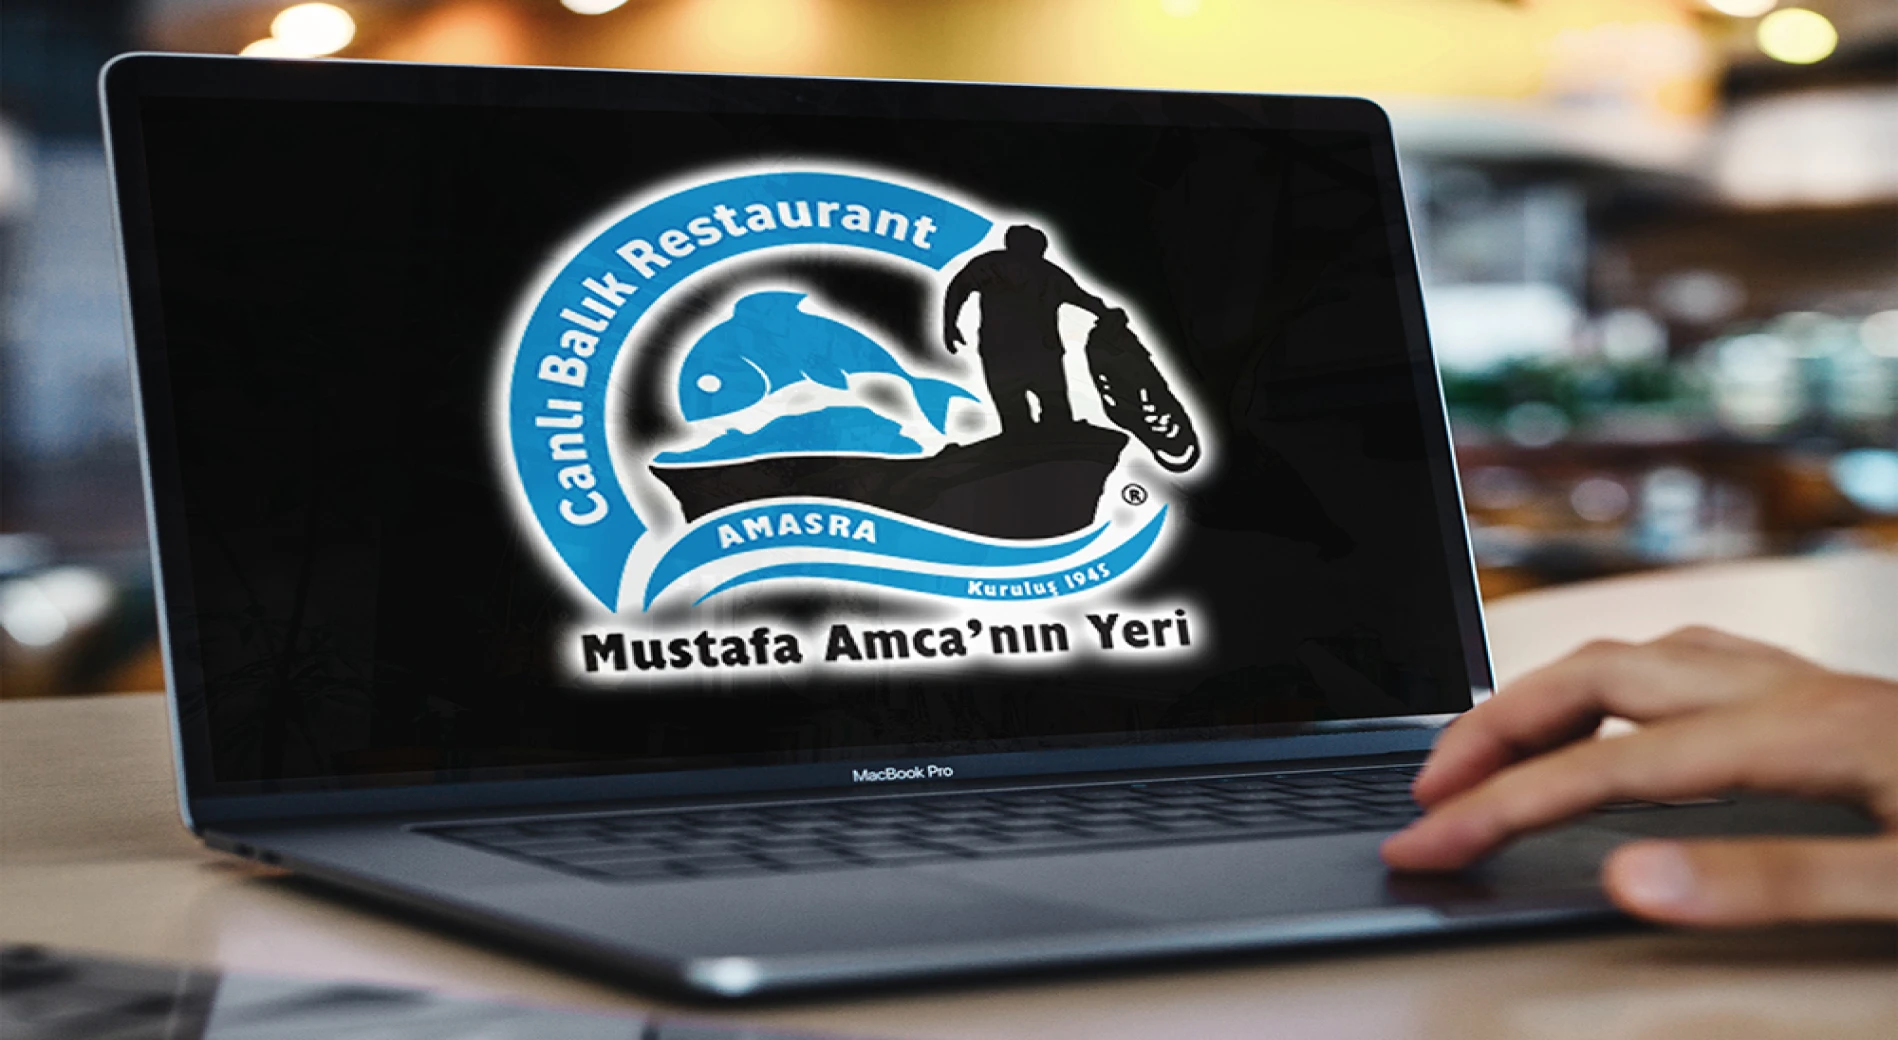 Mustafa Amca'nın Yeri - Amasra Canlı Balık